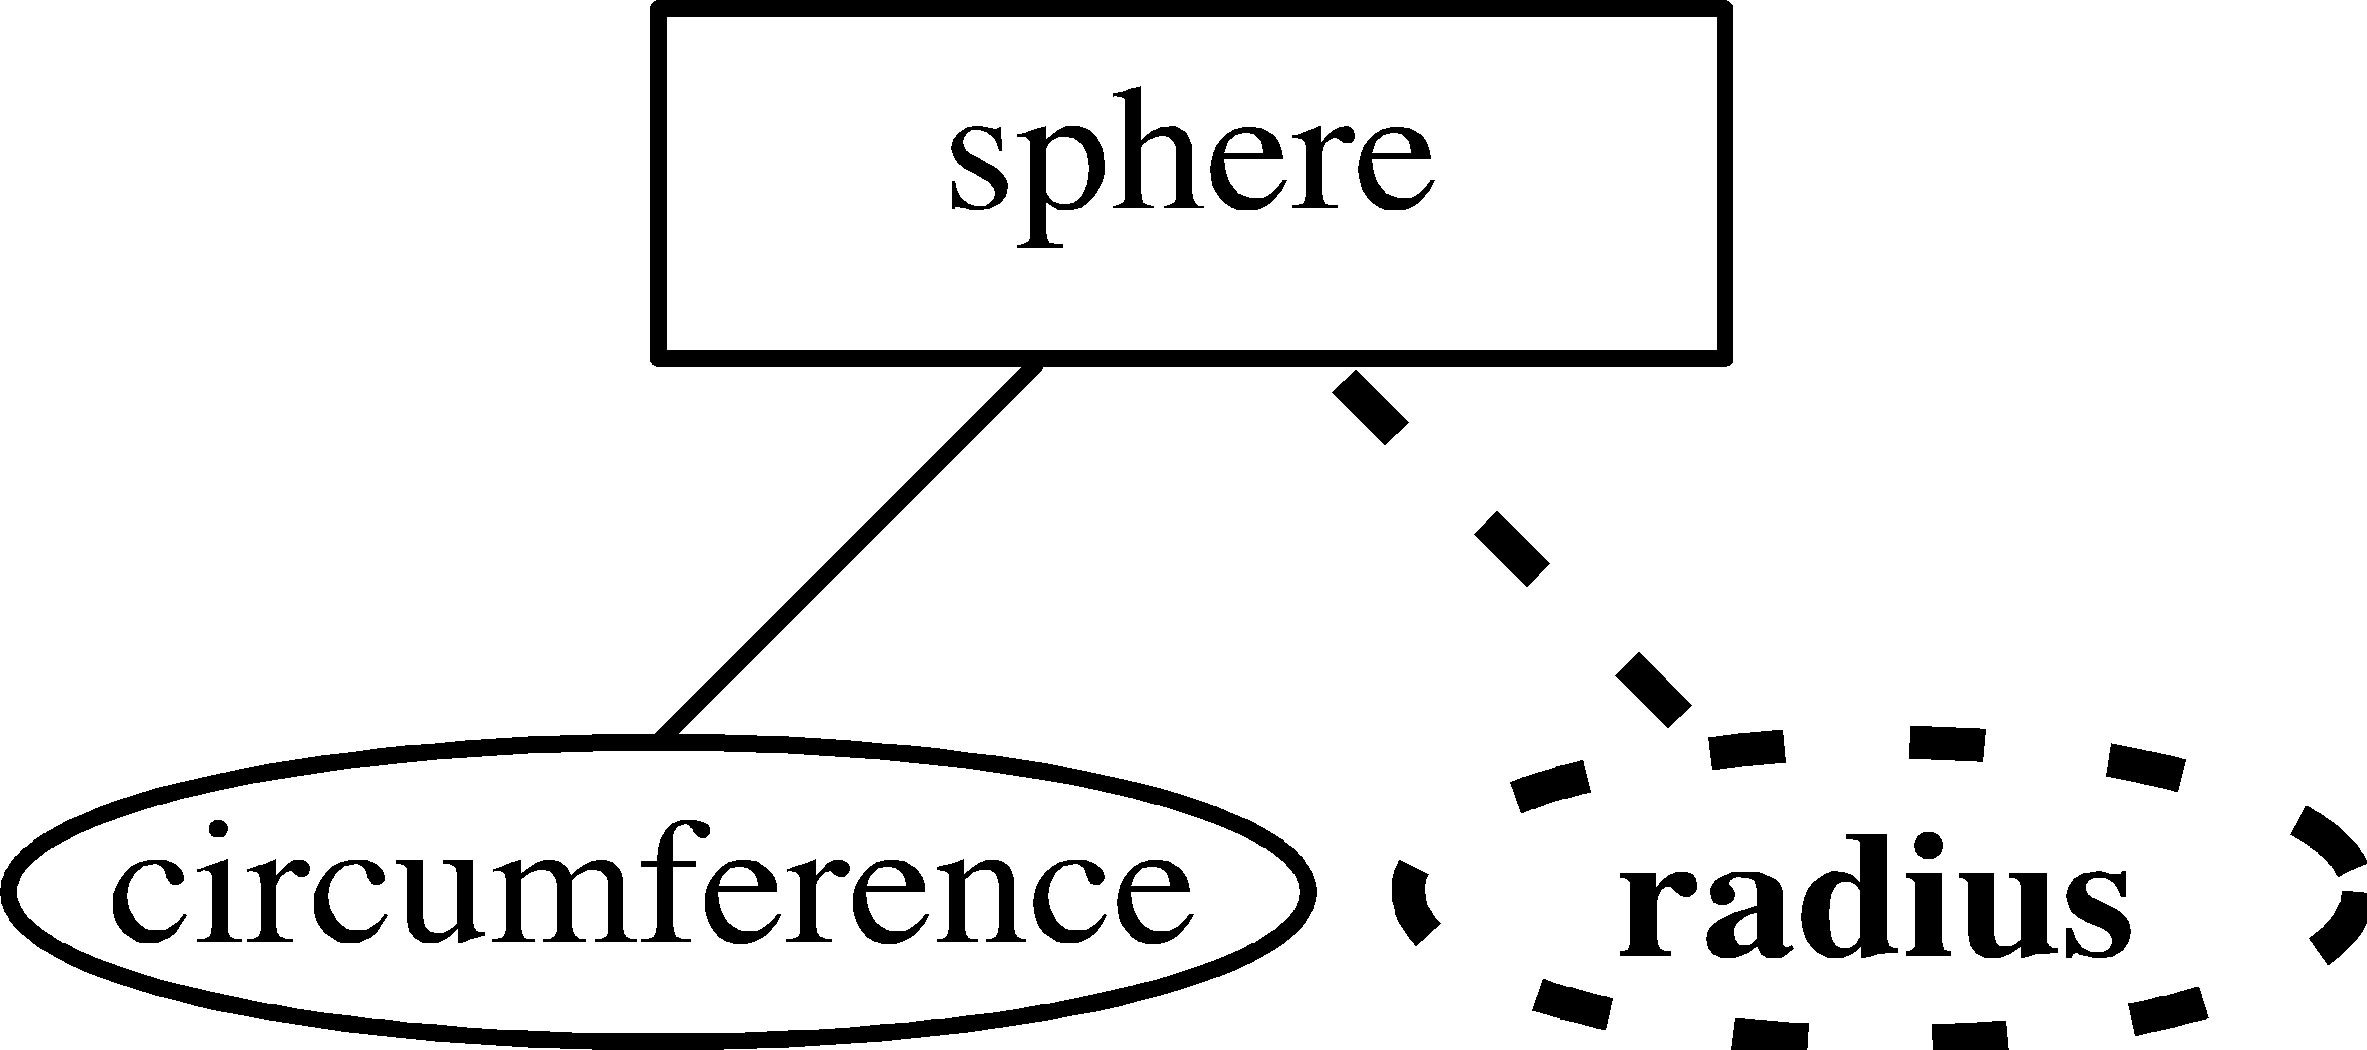 Entity-Relationship Model intended for Er Diagram Composite Key